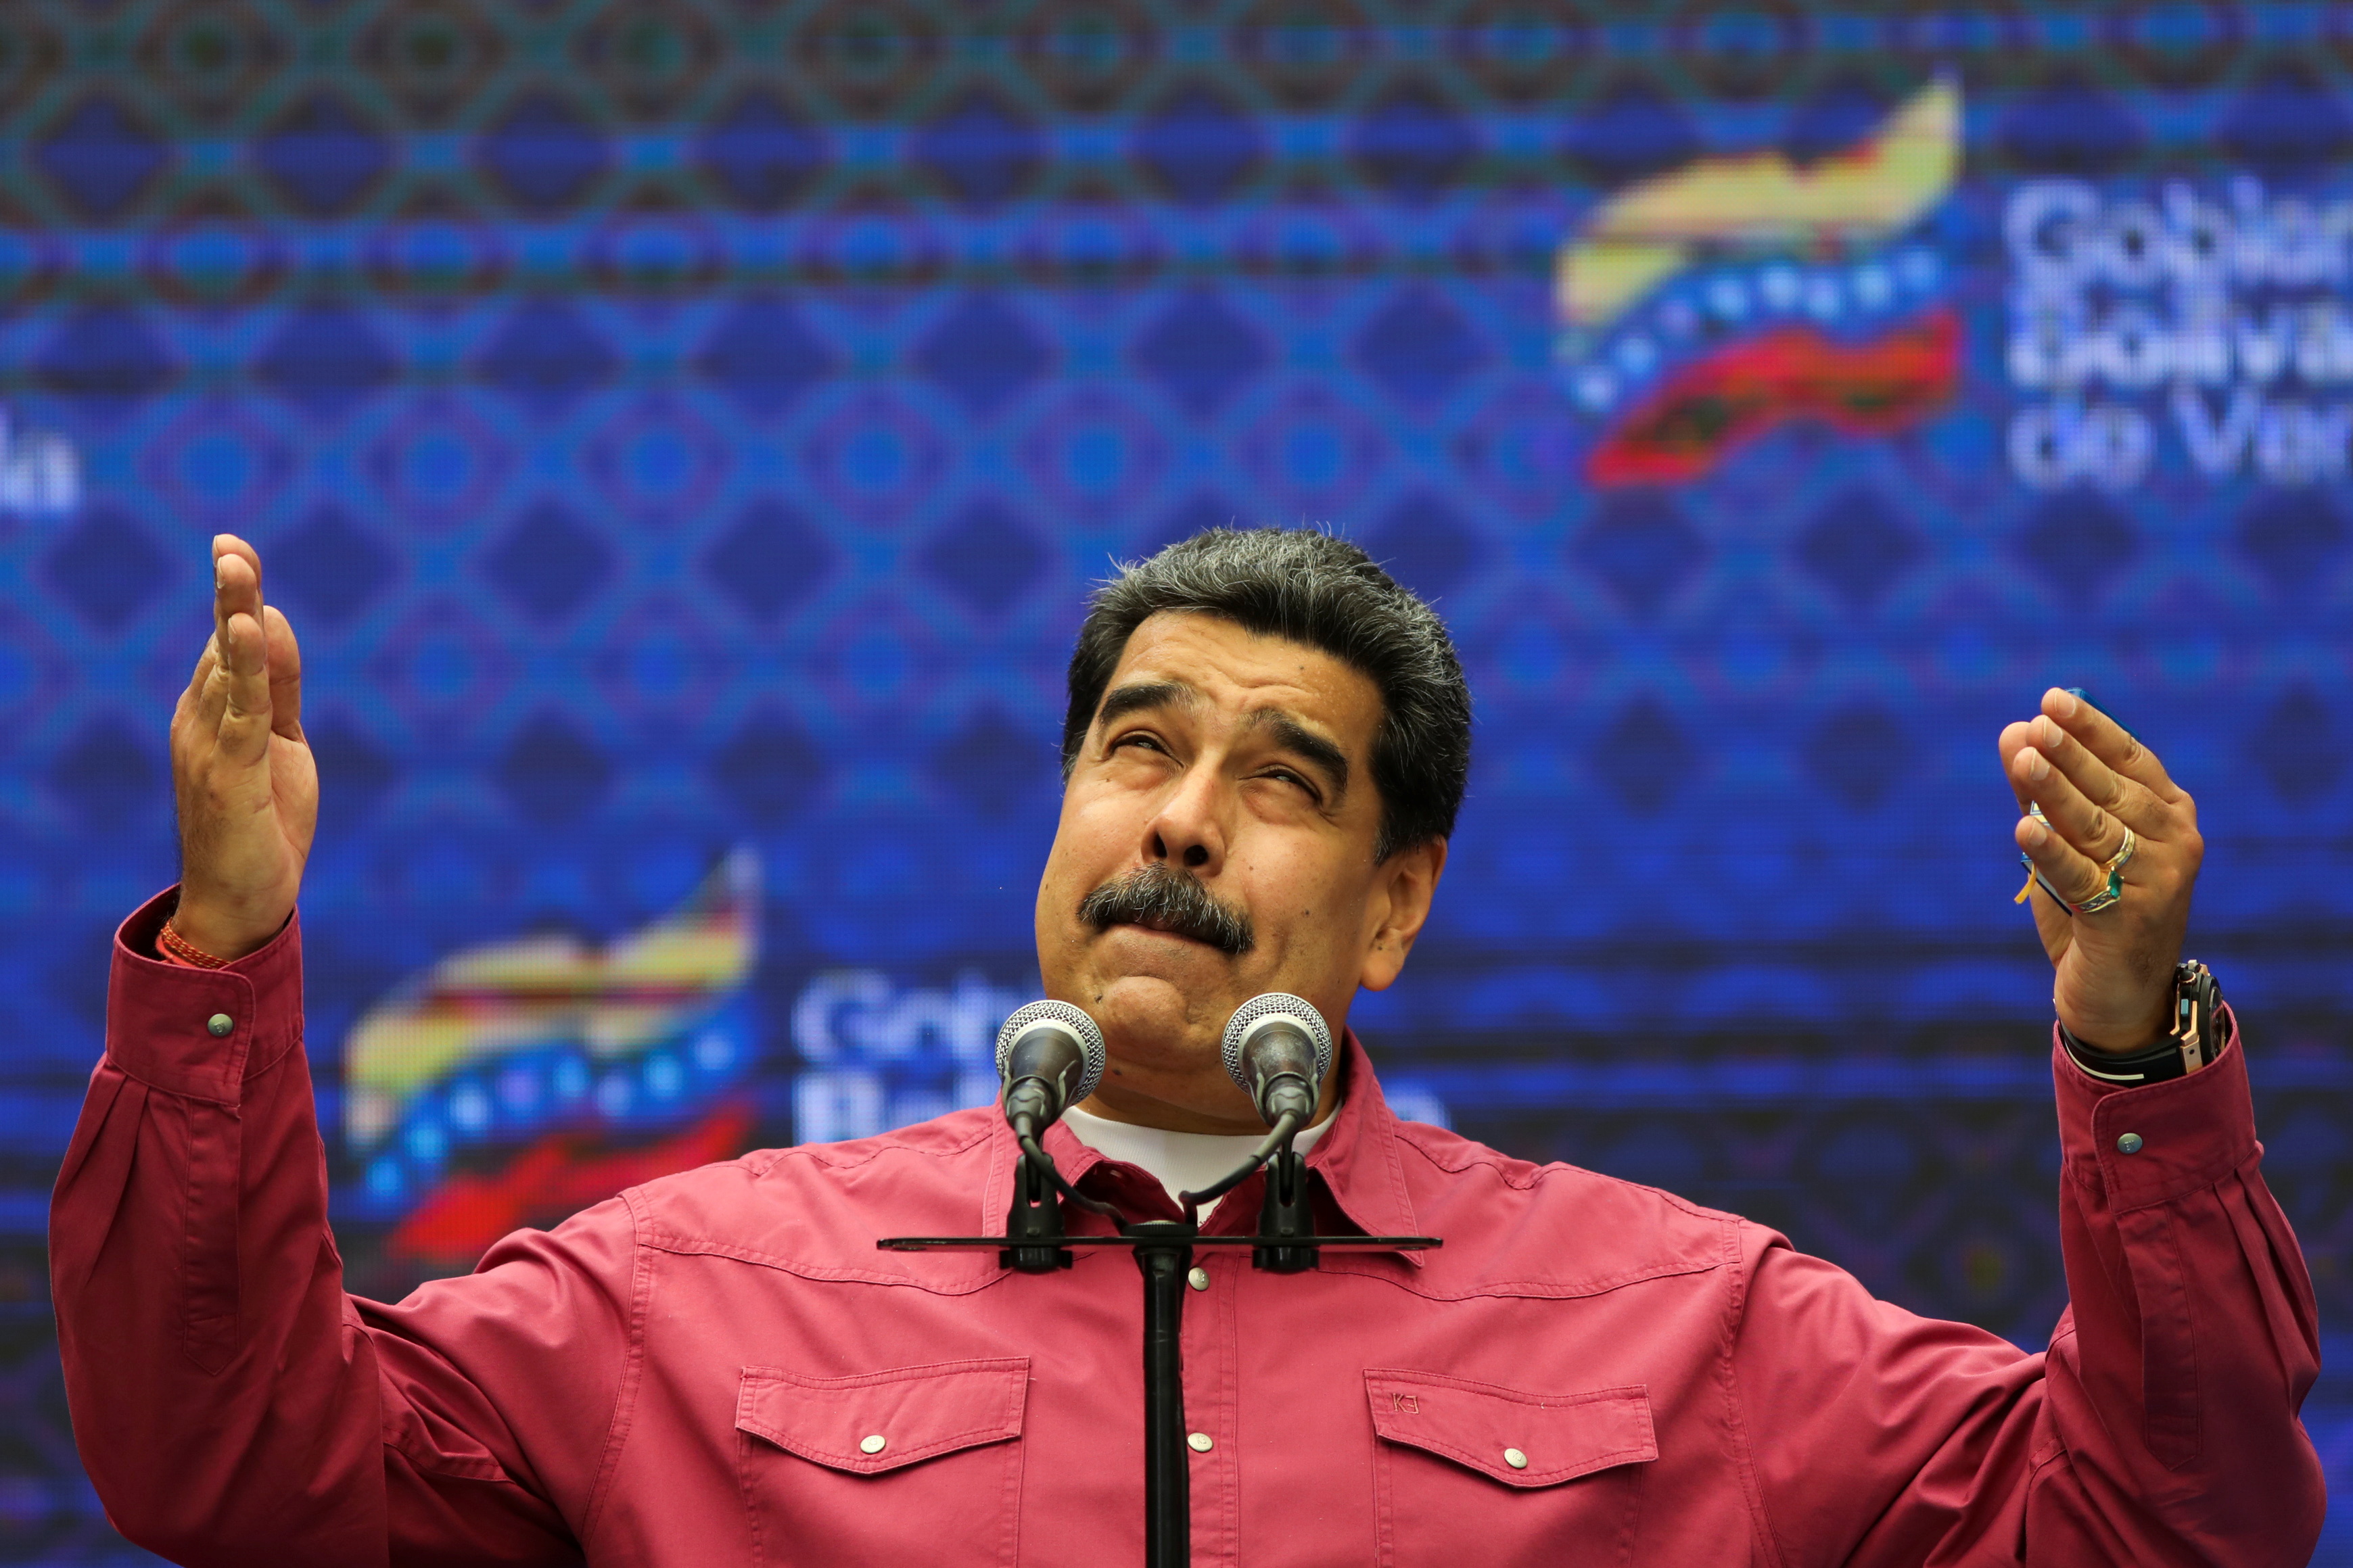 “El dictador que le teme al pueblo”: El CNE le cambió el lugar de votación a Maduro para que sufrague rodeado de militares